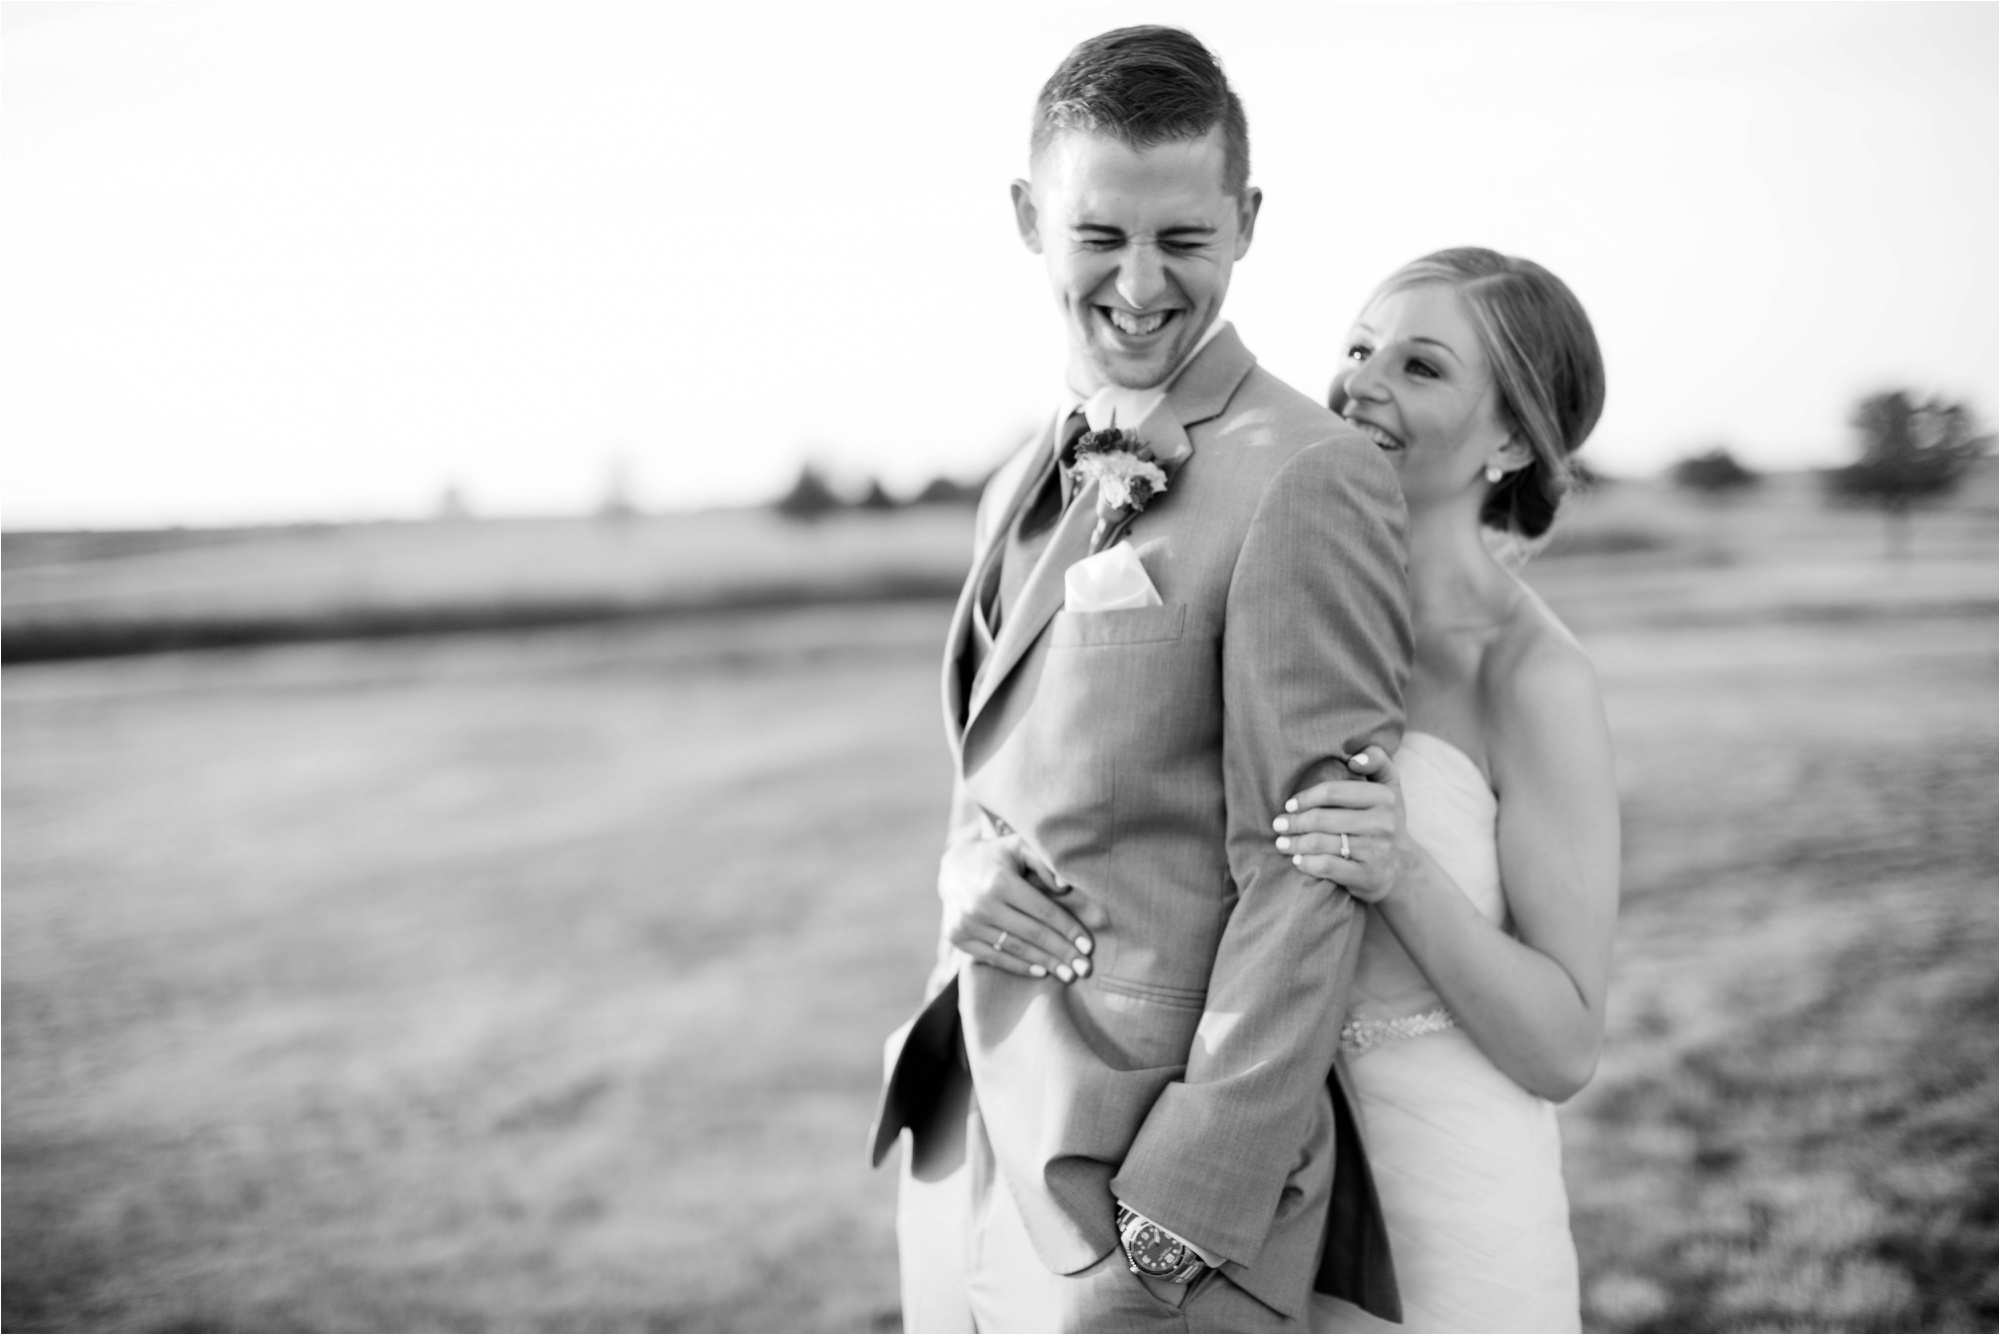 Caitlin and Luke Photography, Bloomington Normal Wedding Photographers, Illinois Wedding Photographers, Illinois Husband and Wife Wedding Photography Team_0350.jpg